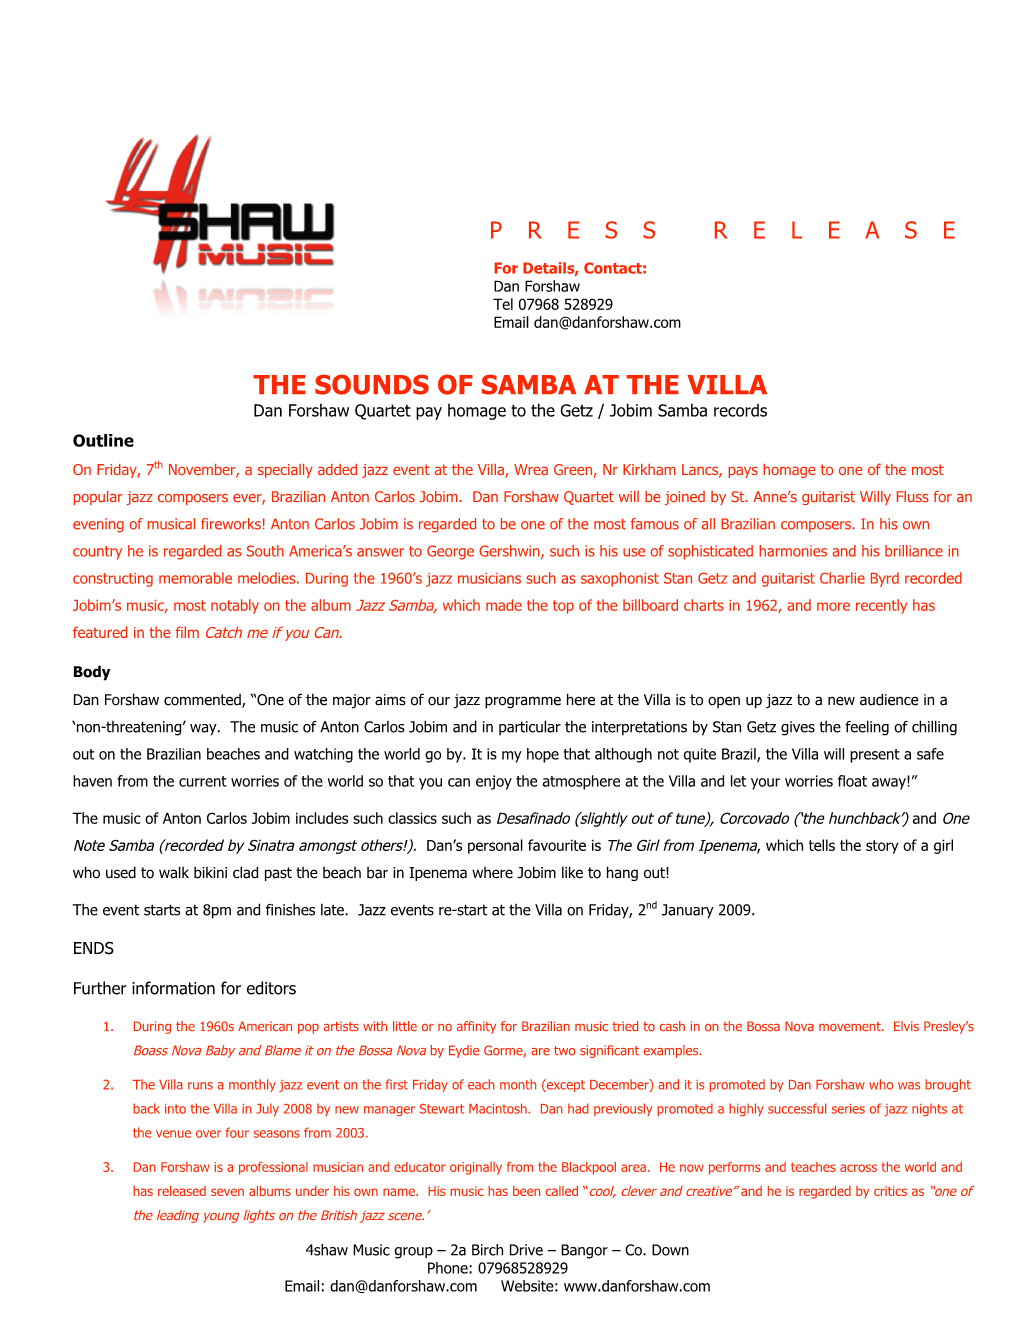 The Sounds of Samba at the Villa